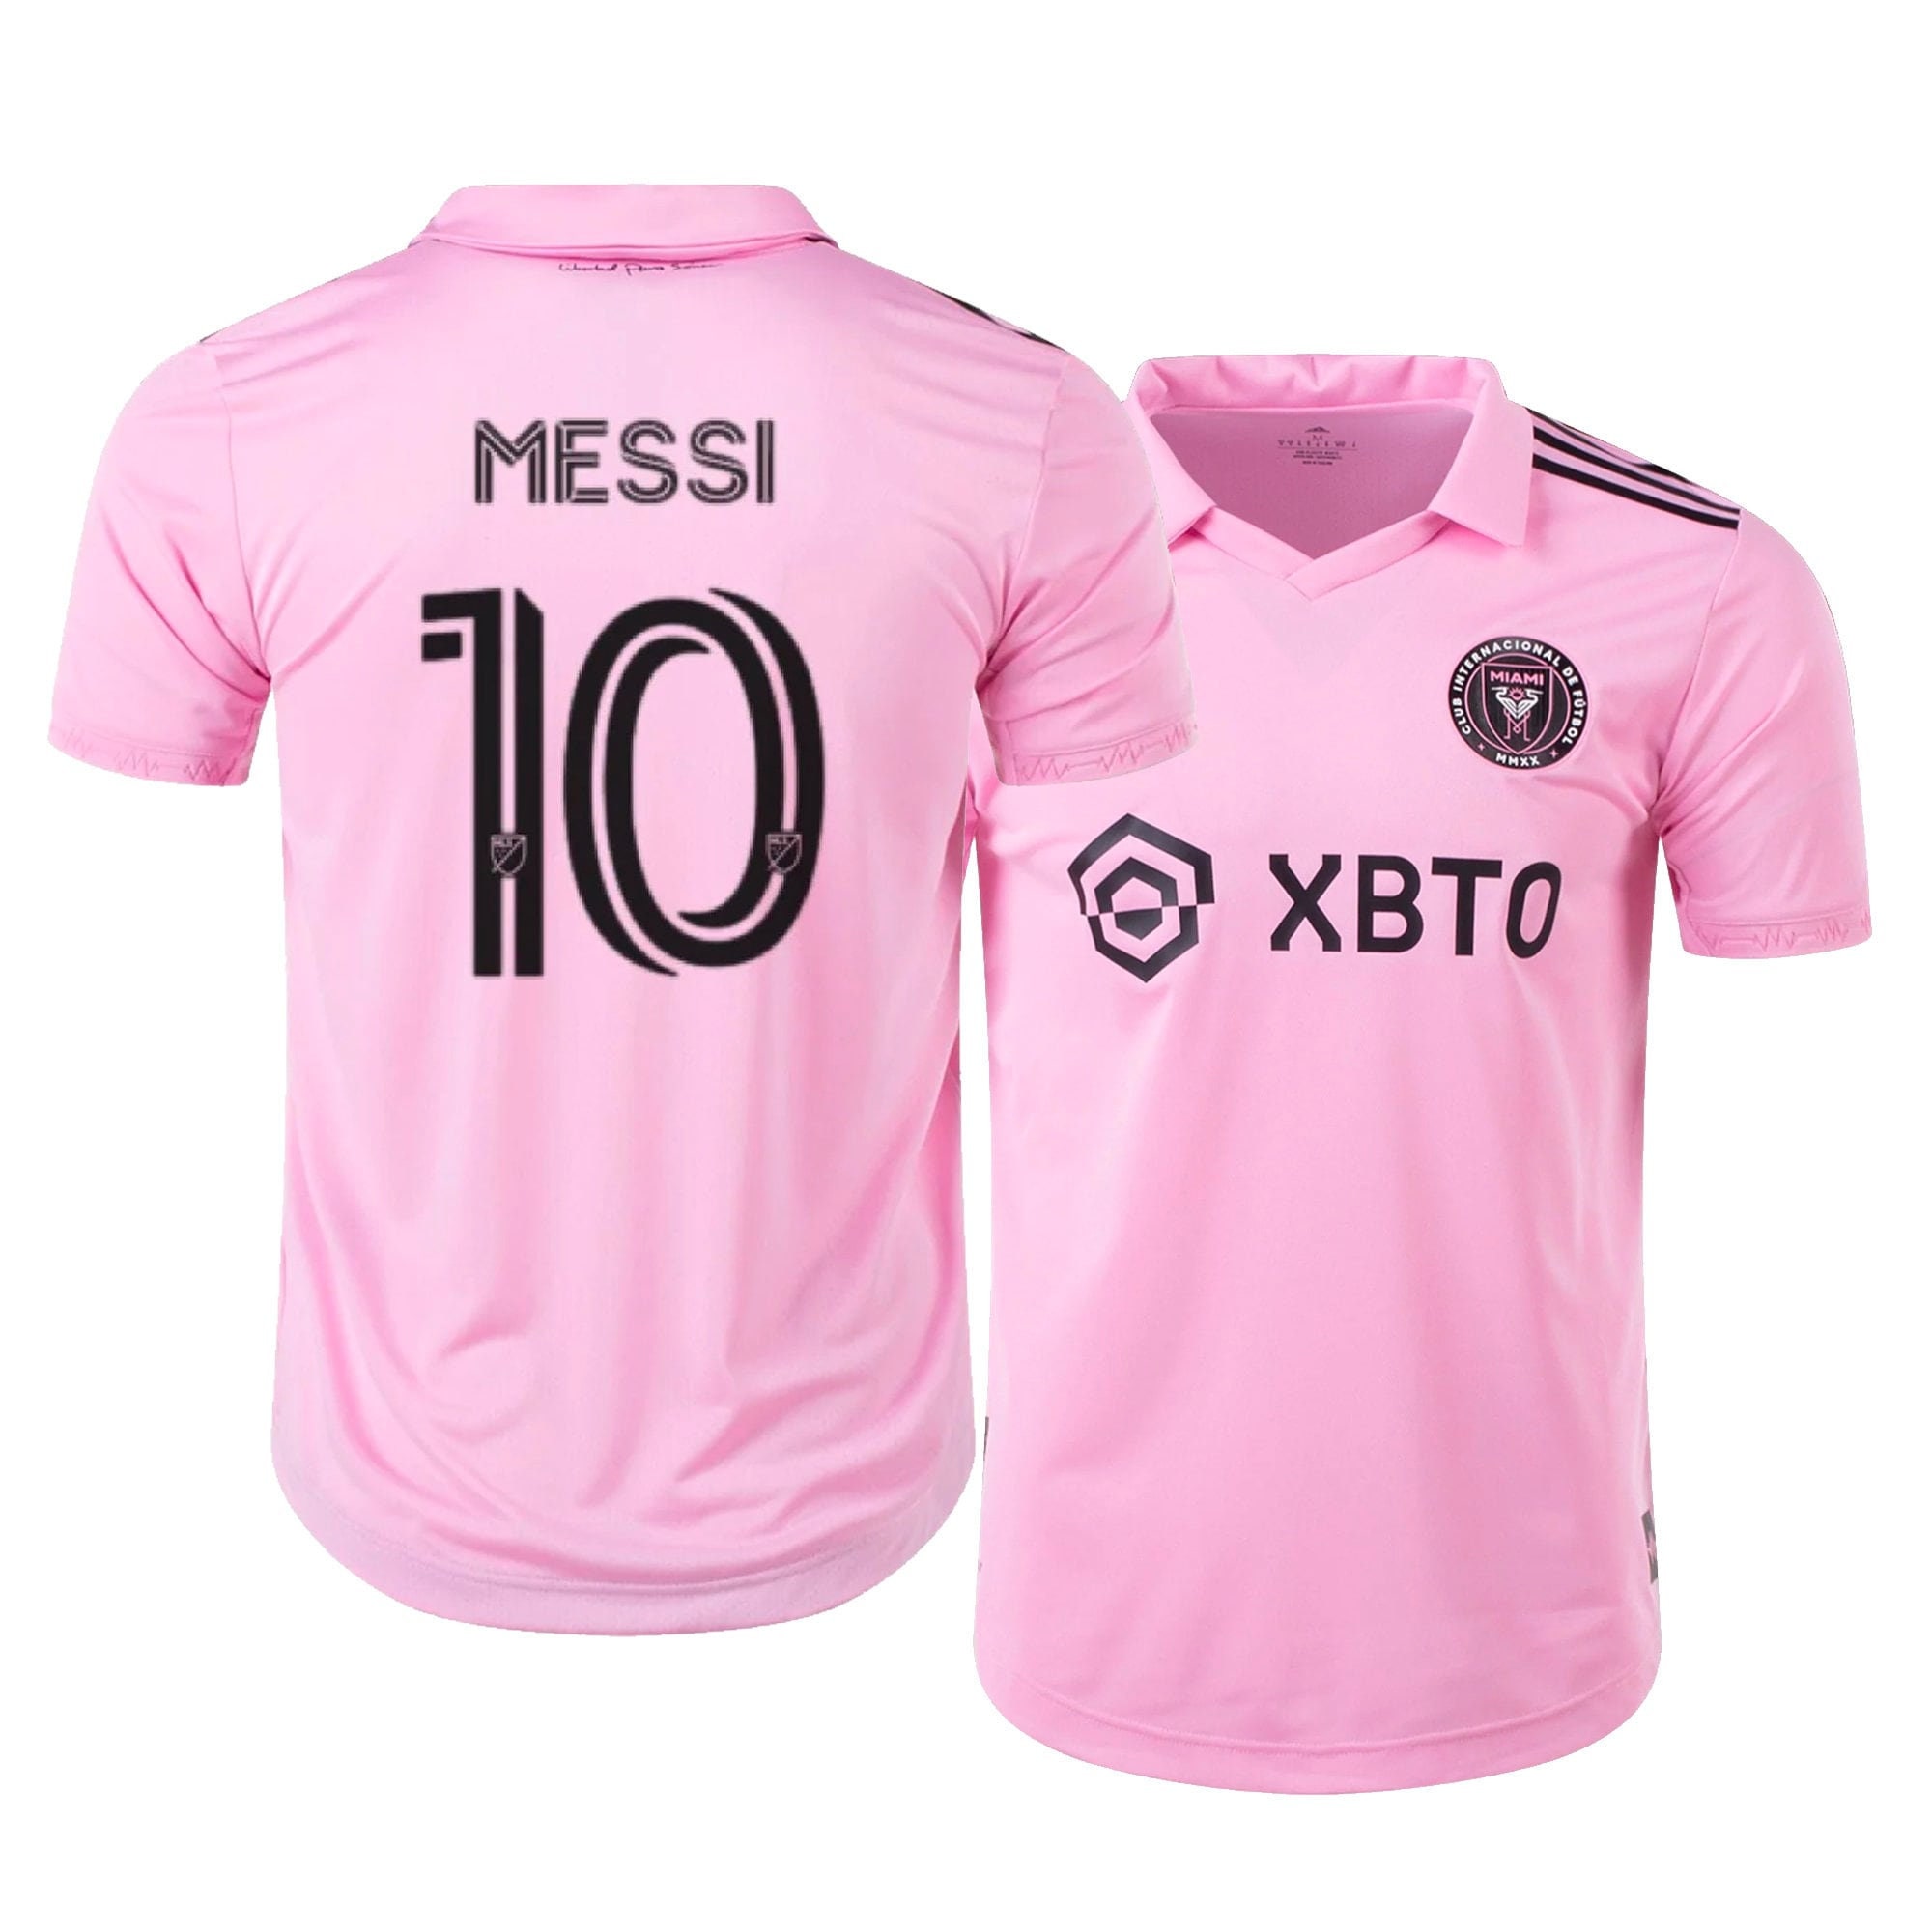 Messi Jersey Set Soccer Kit Pink or Black NEW 23/24 Uniform - Etsy